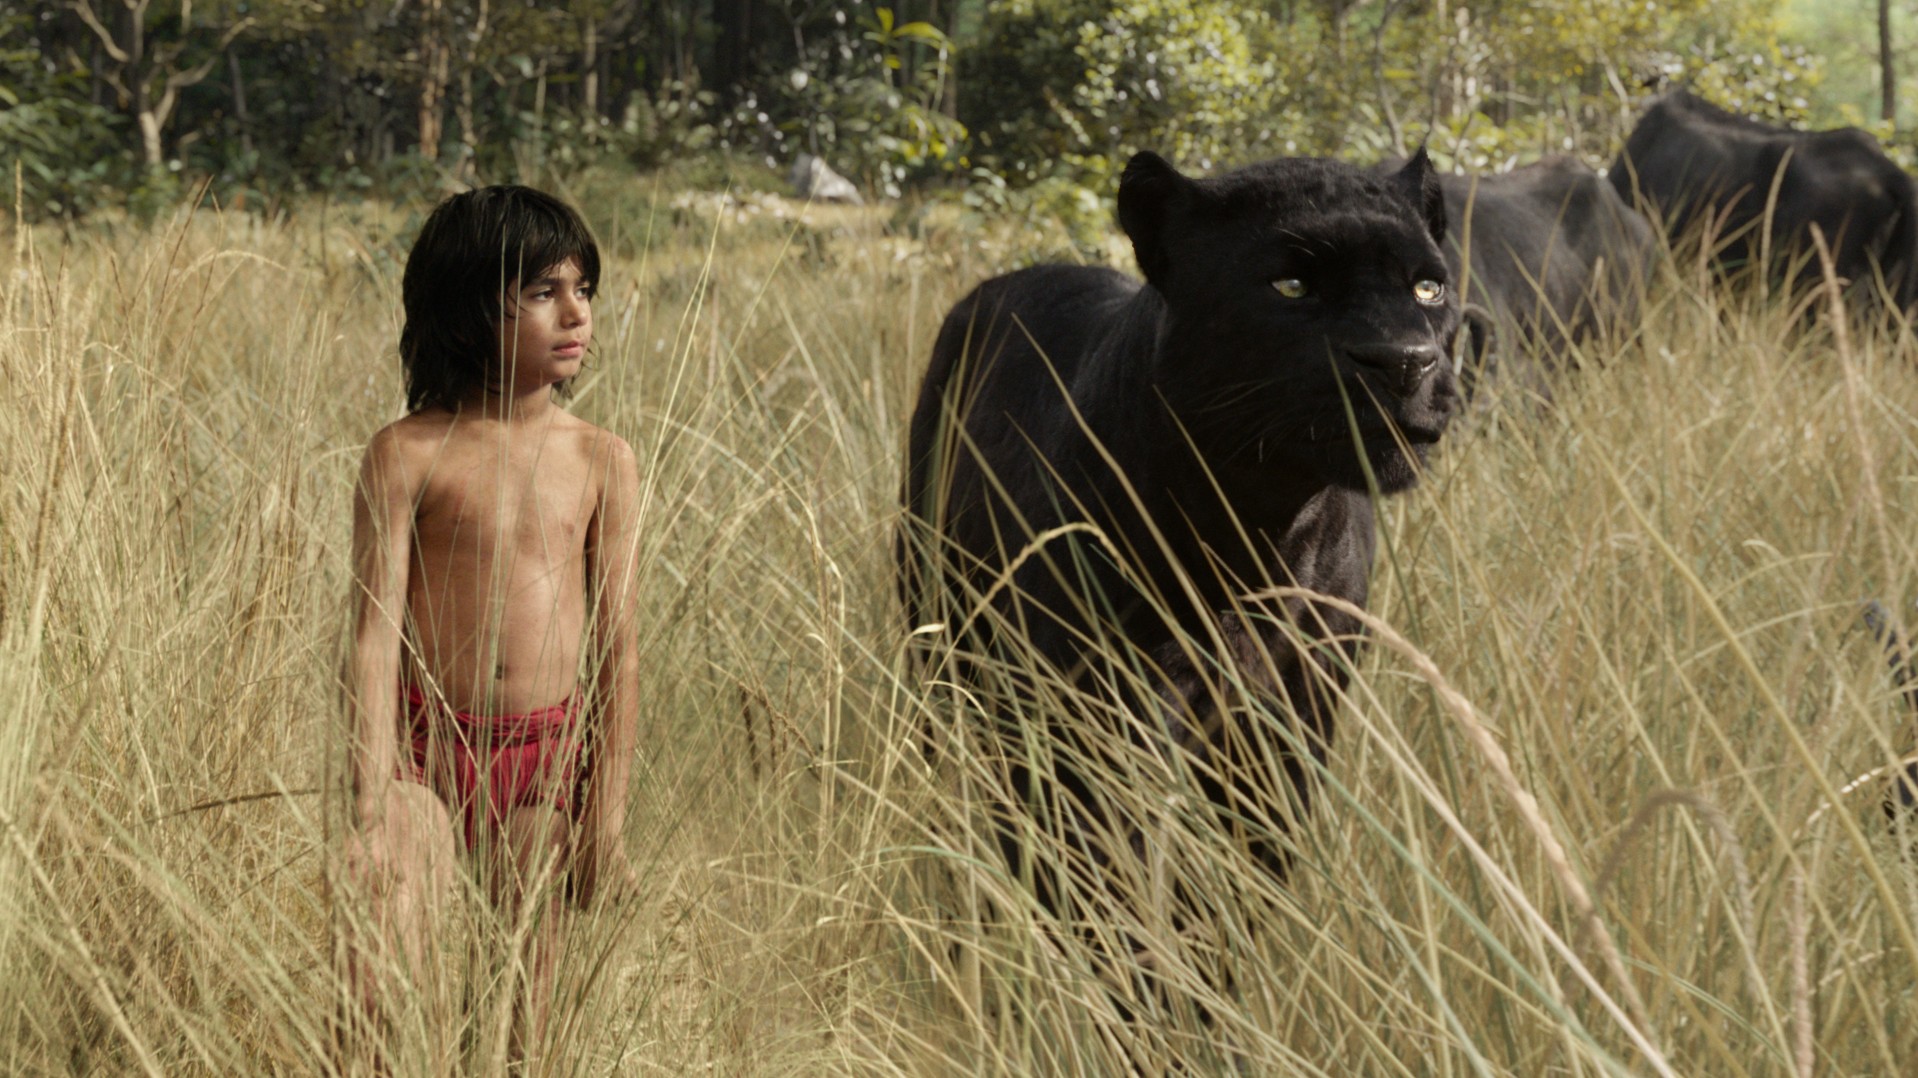 Neu im Kino: "The Jungle Book" - Balu, Baghira & Co. sind nic...